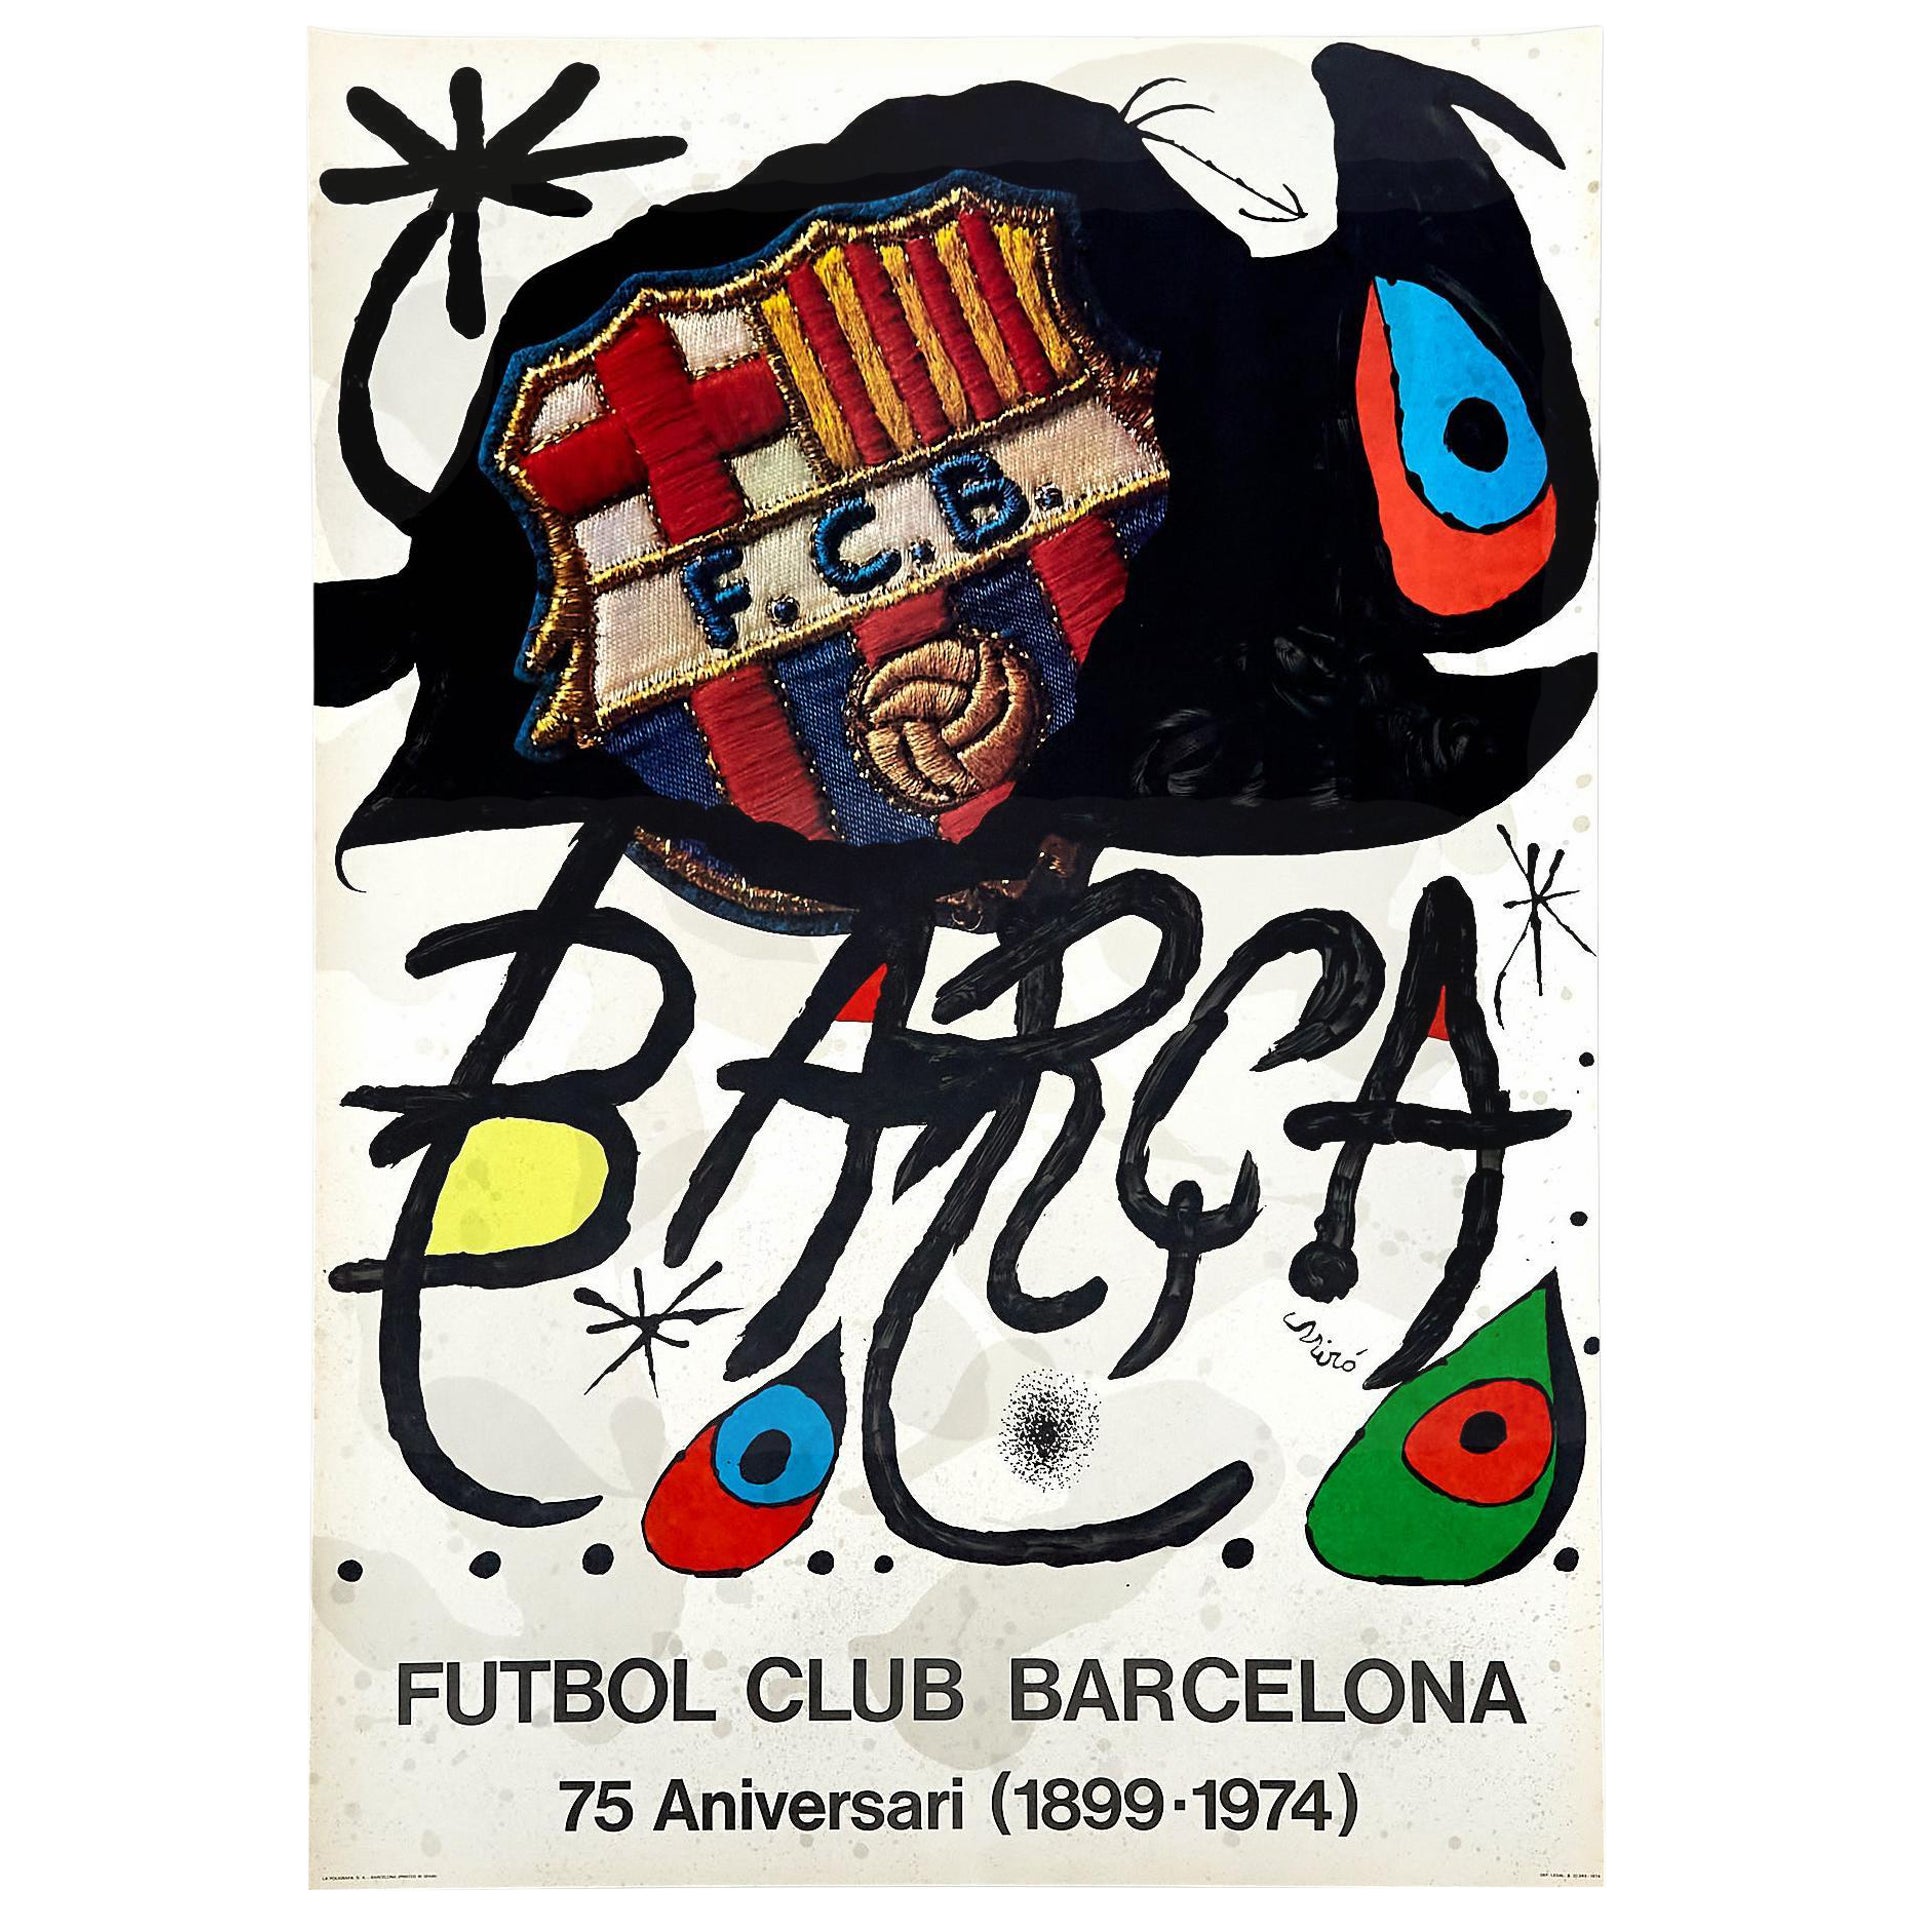 Hommage à l'Icone : L'affiche historique de Joan Miró - 75e anniversaire du FC Barcelone 